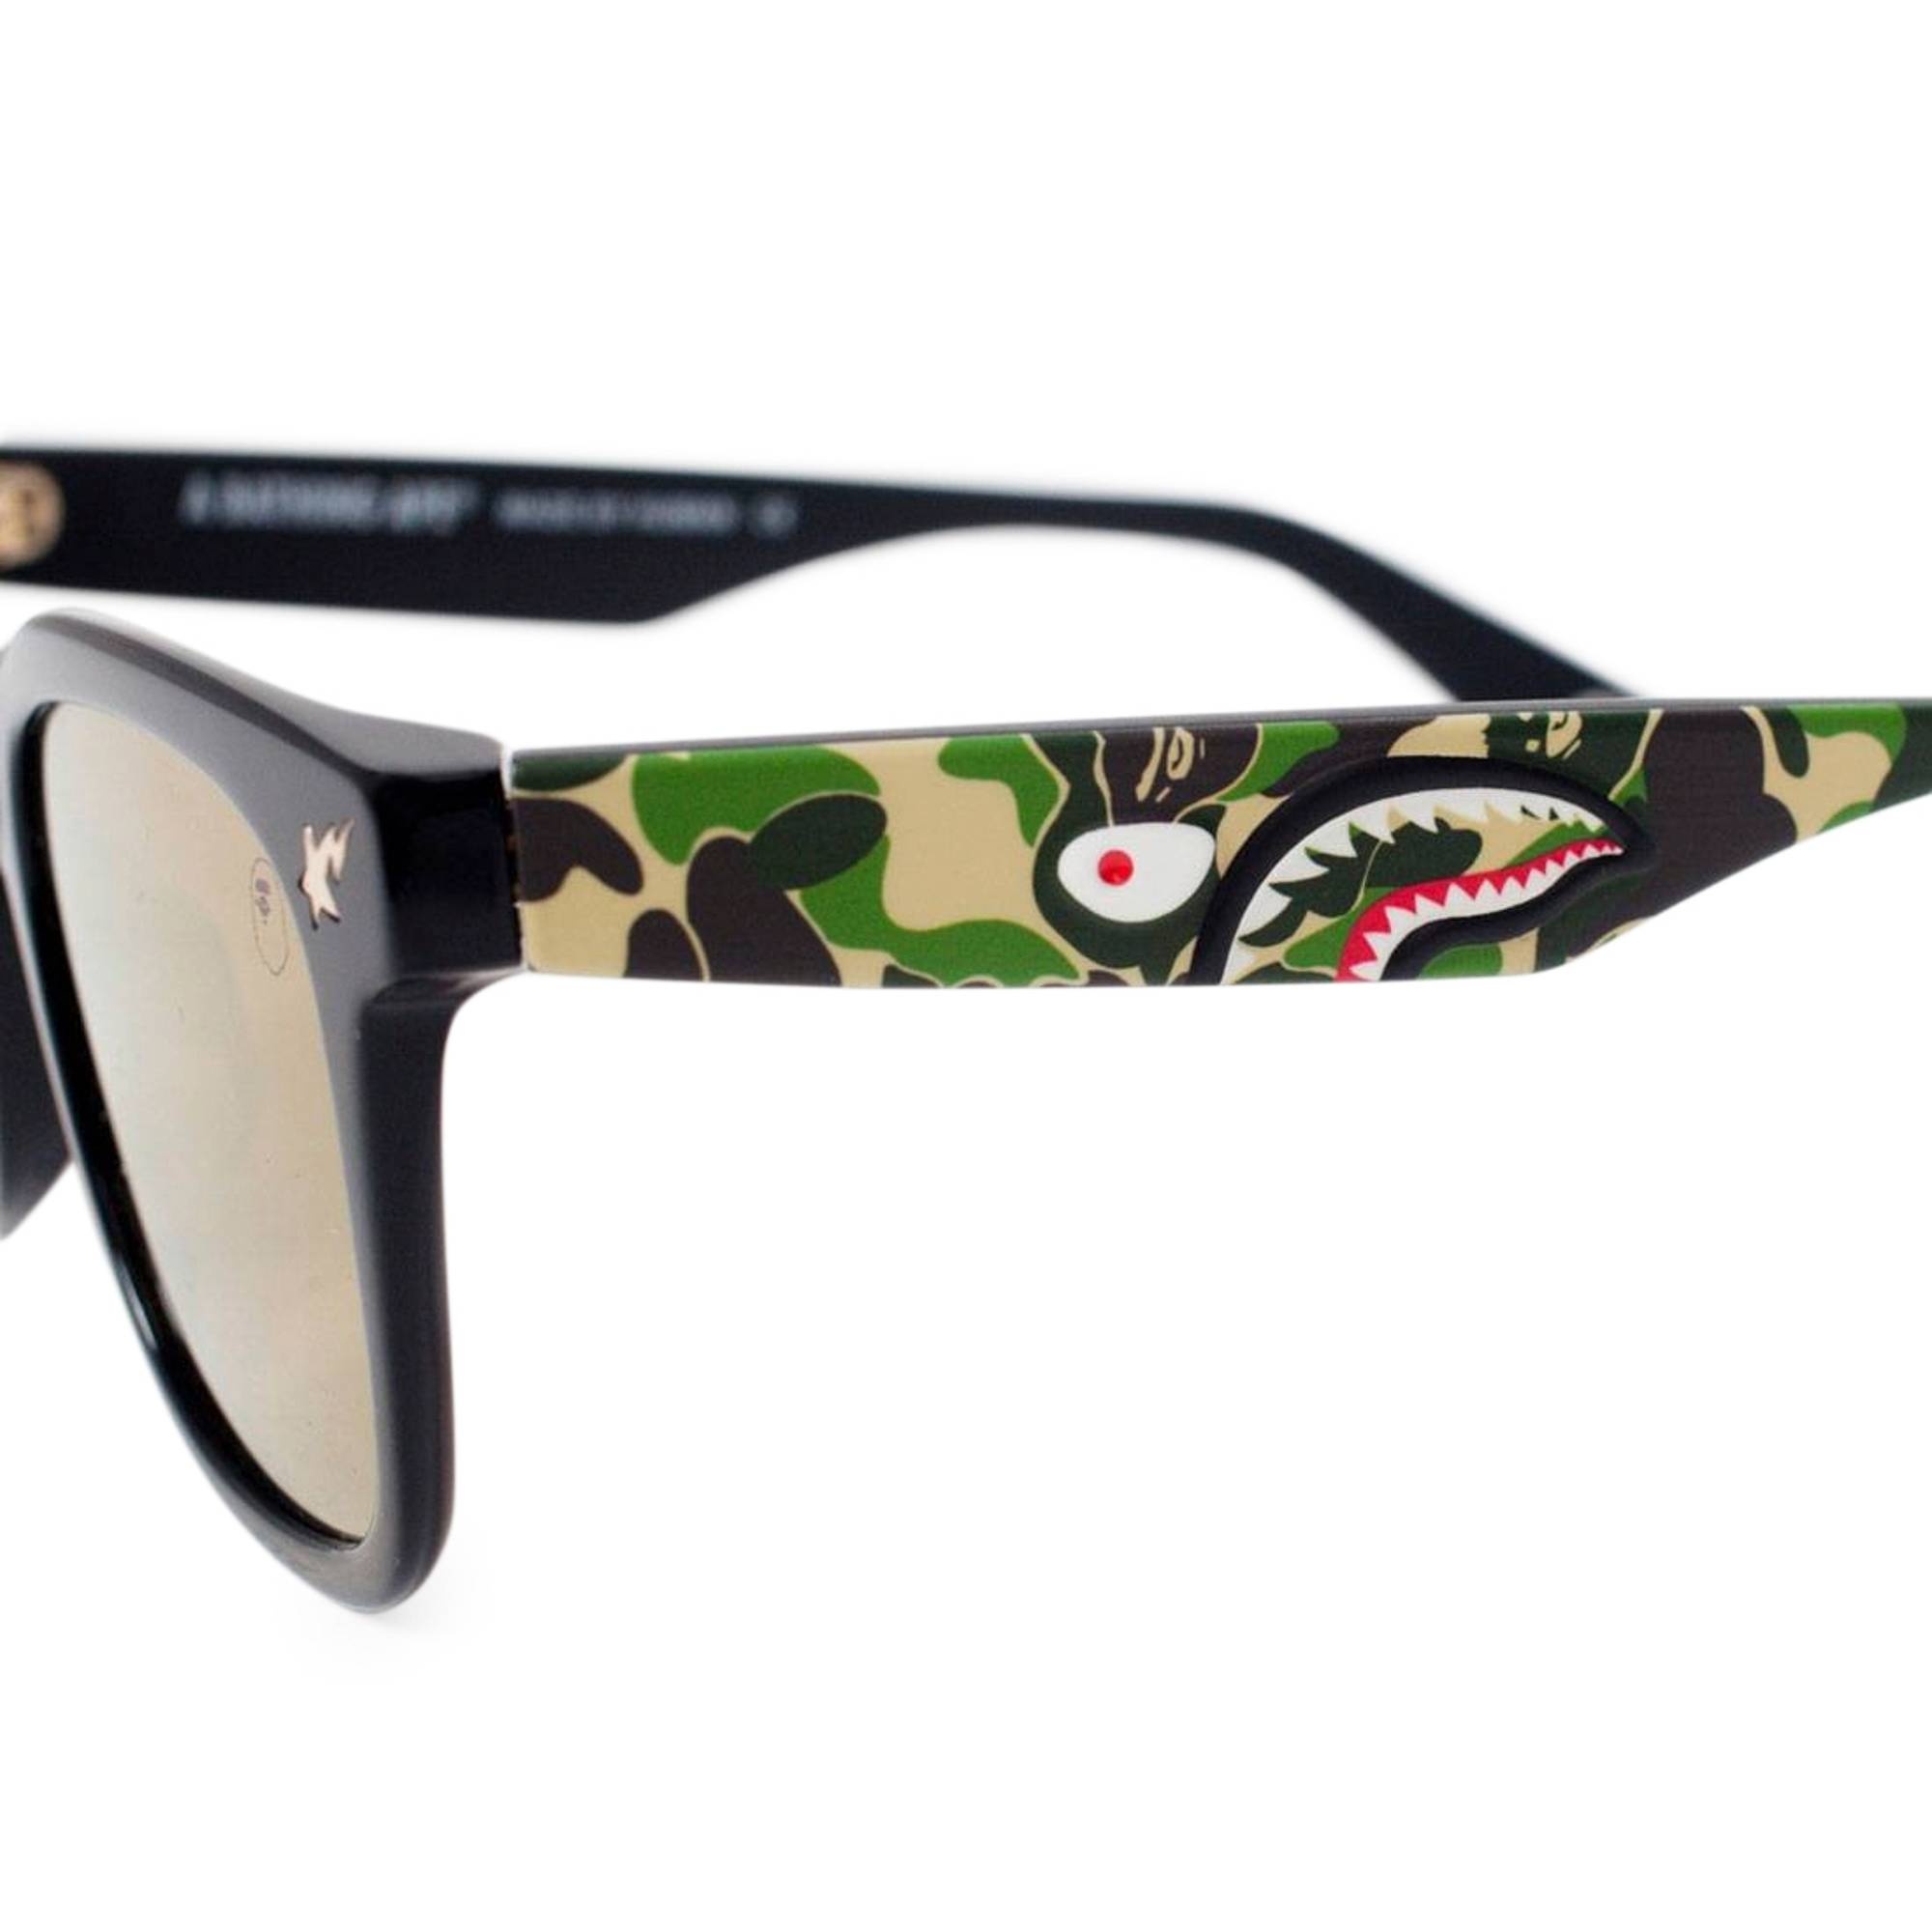 BAPE Sunglasses 'Black/Camo' - 3